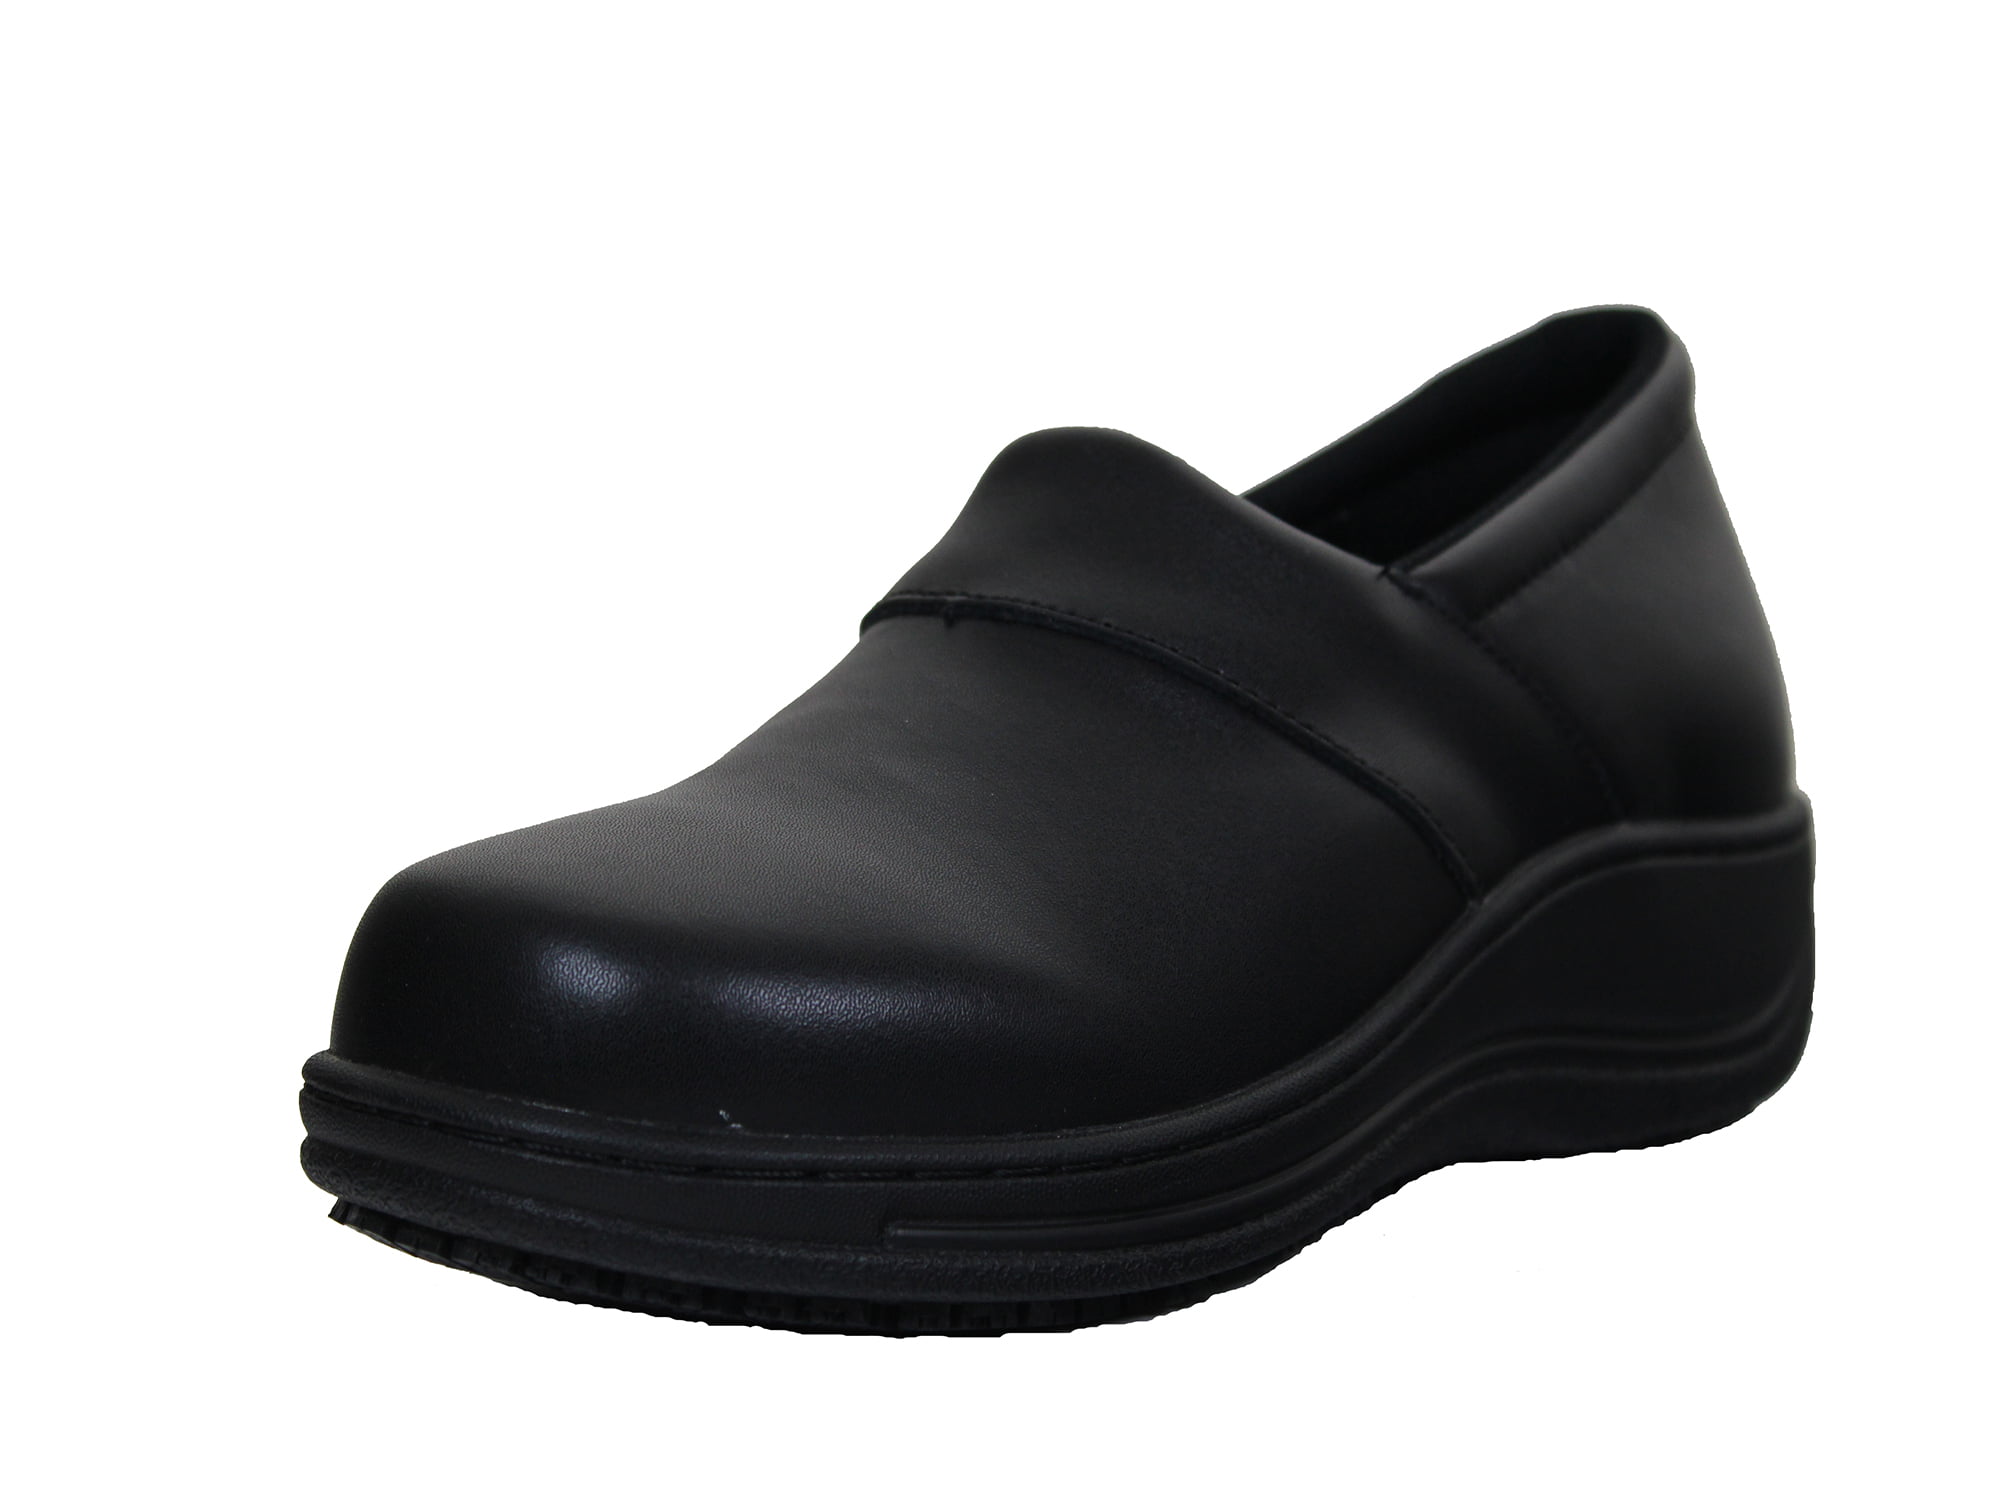 beetje expeditie Verkeerd Women's Slip Oil Resistant Lightweight Comfort Work Shoes with Waterproof  Leather Upper and Non-Slip Rubber Sole, Wear-Resistant Women Shoes -  Walmart.com